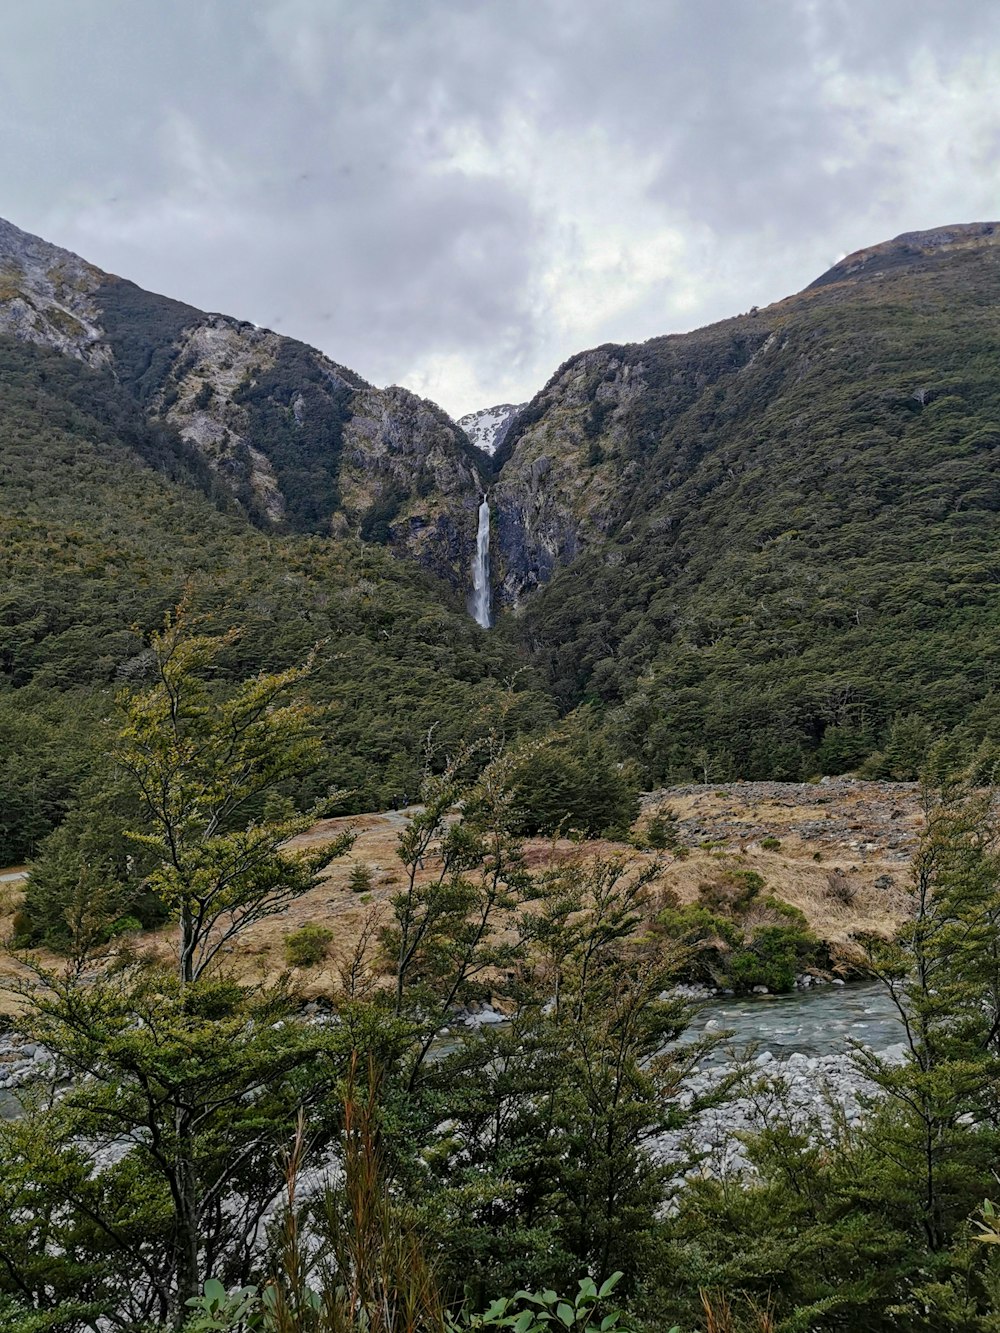 Wasserfall zwischen Klippen mit Blick auf Bäume